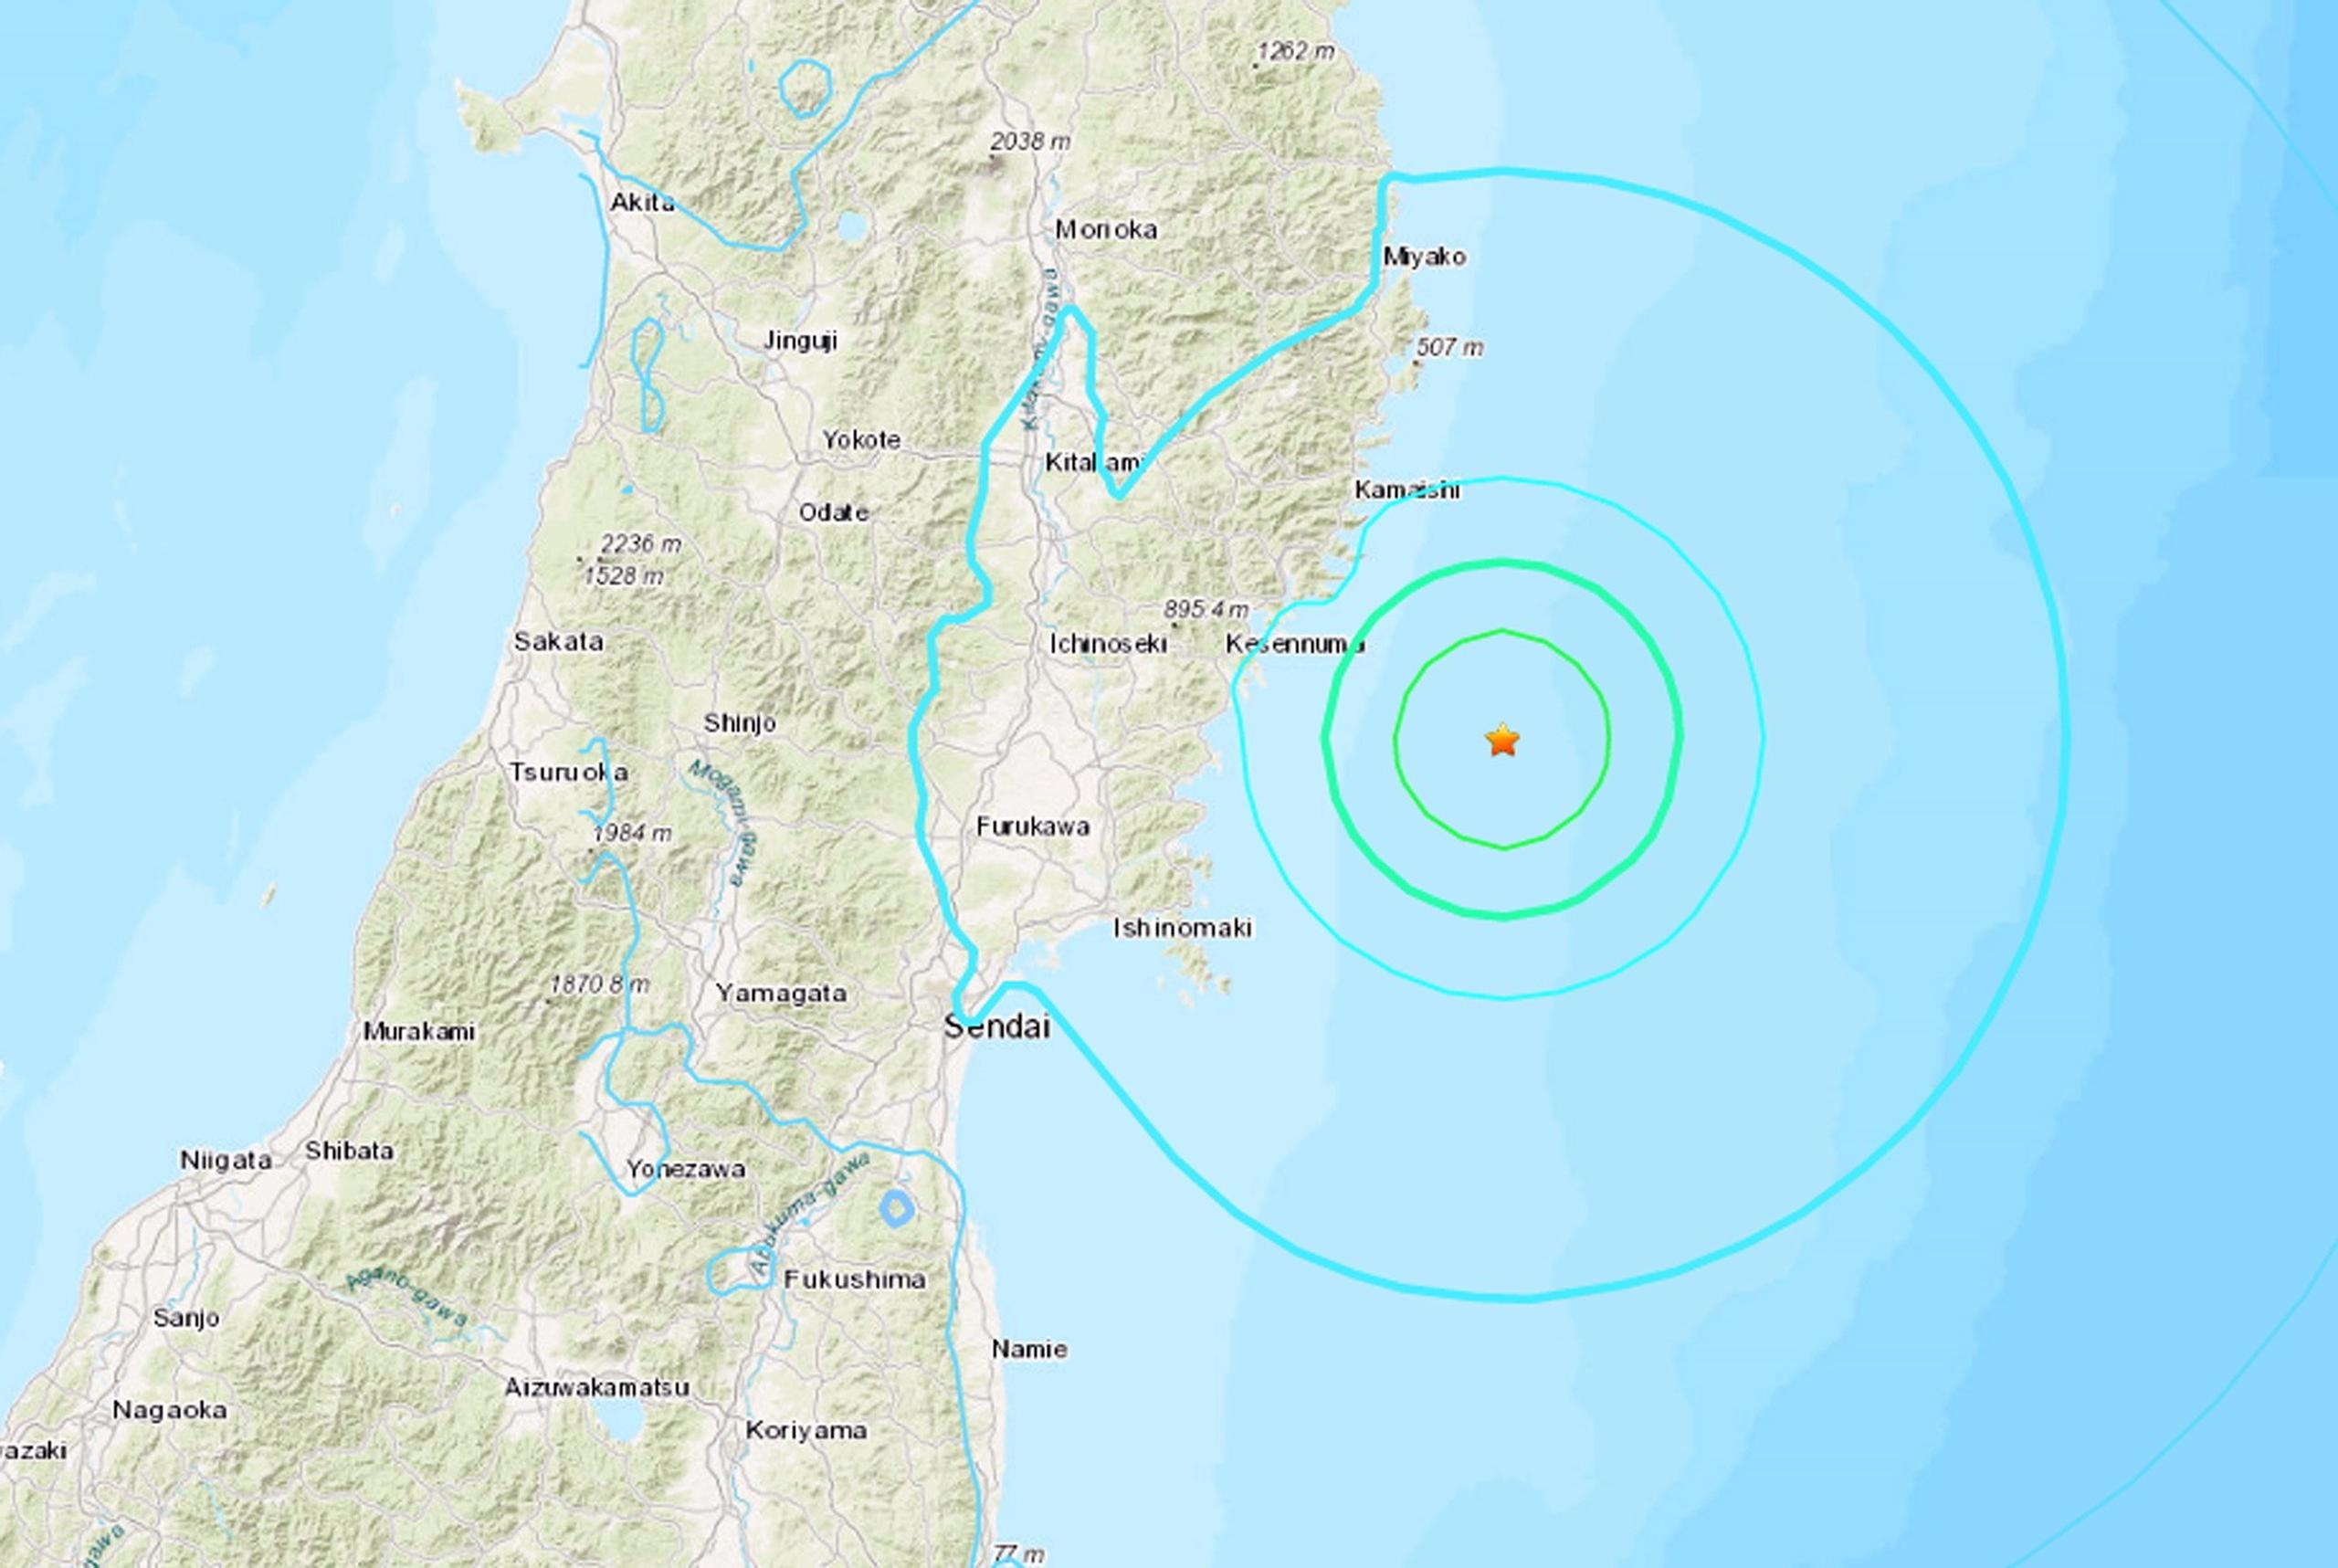 Seis minutos después del primer temblor hubo una réplica de magnitud 5.0.